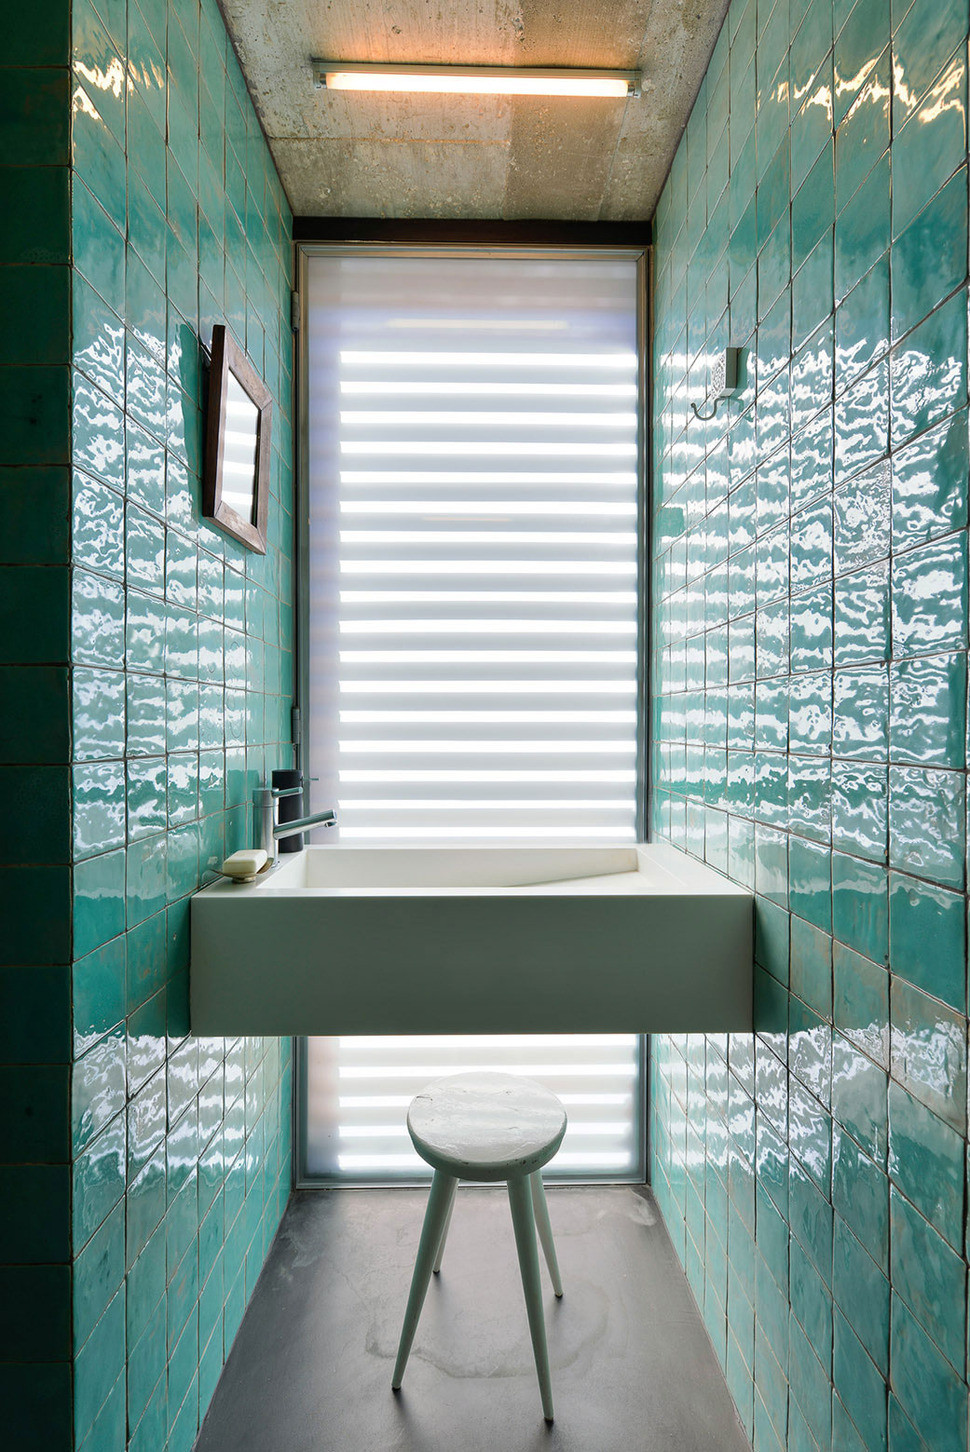 Bathroom And Shower Tile Ideas
 Top 10 Tile Design Ideas for a Modern Bathroom for 2015